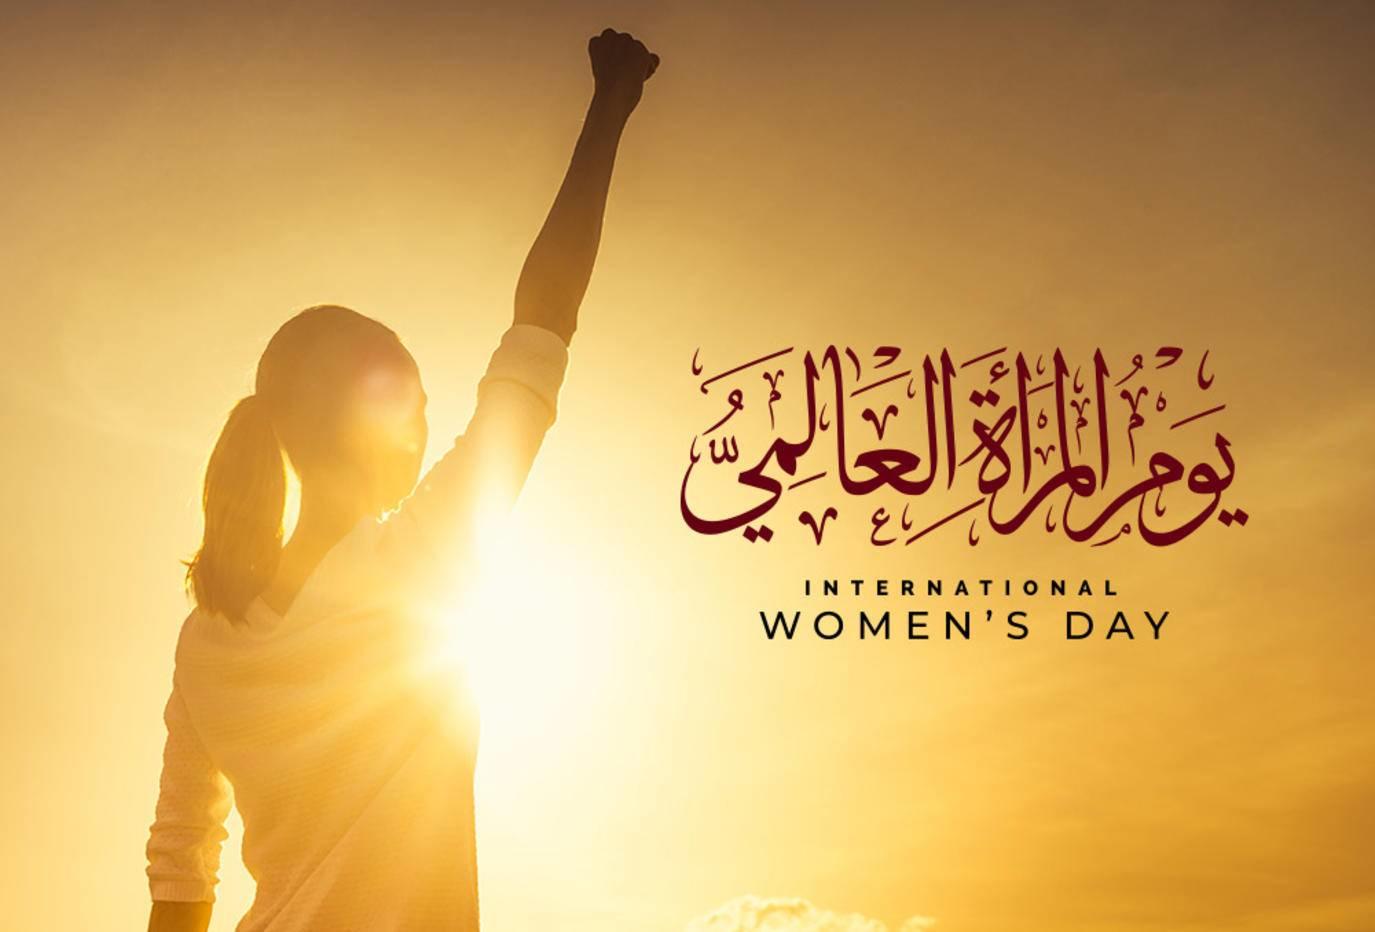 اول عام بيوم المرأة في الشرق الاوسط